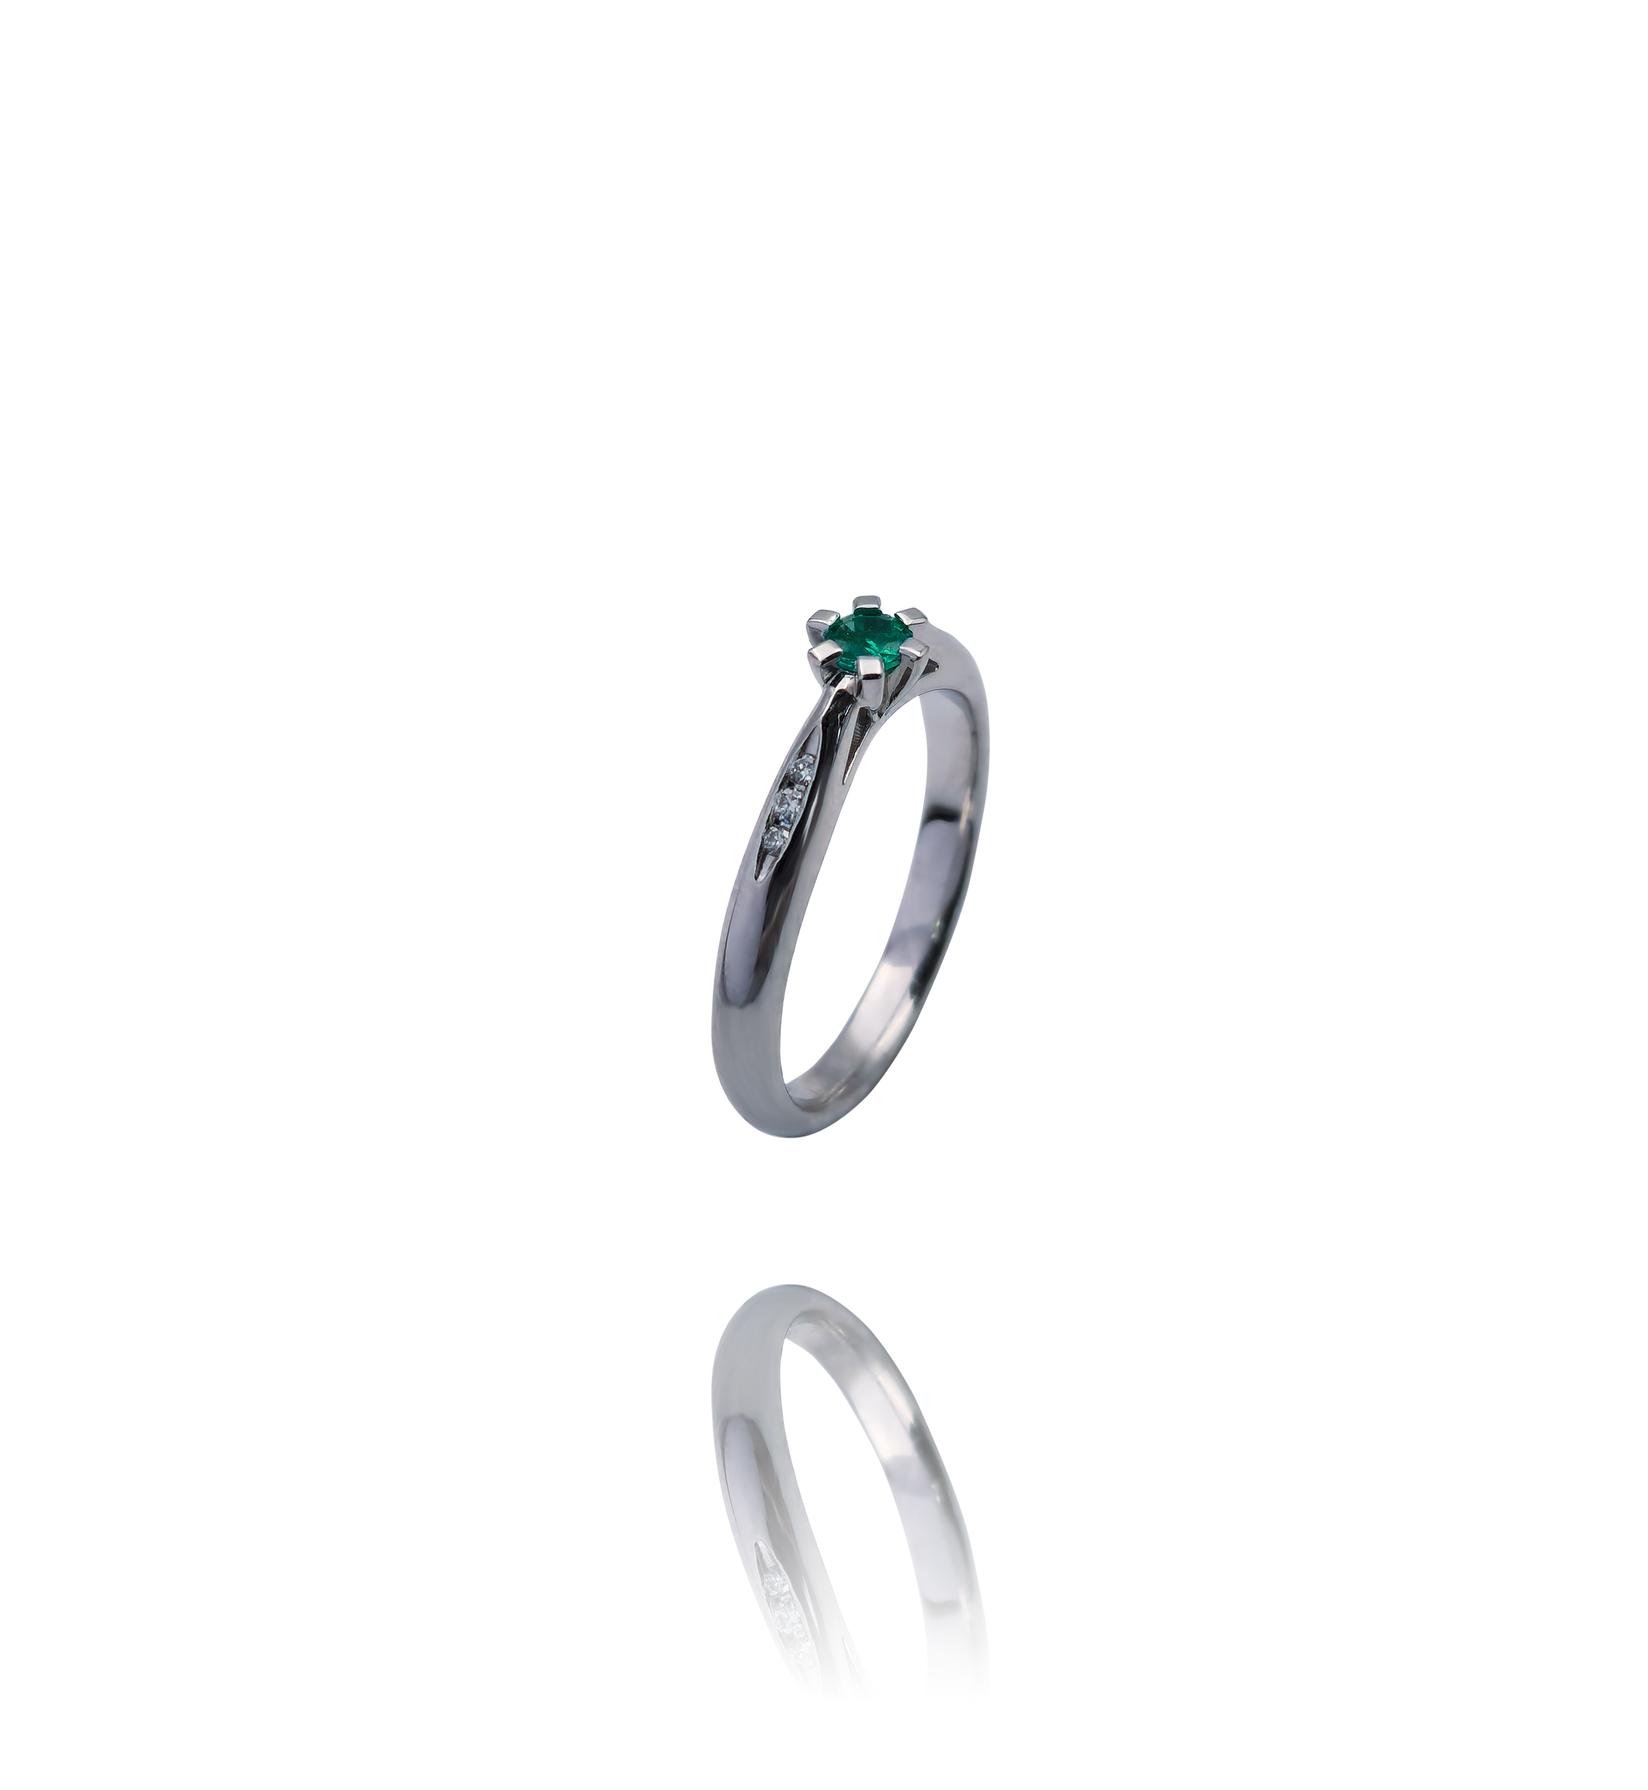 Selected image for Ženski prsten od Belog zlata sa Brilijantima i Smaragdom, 585, 17mm